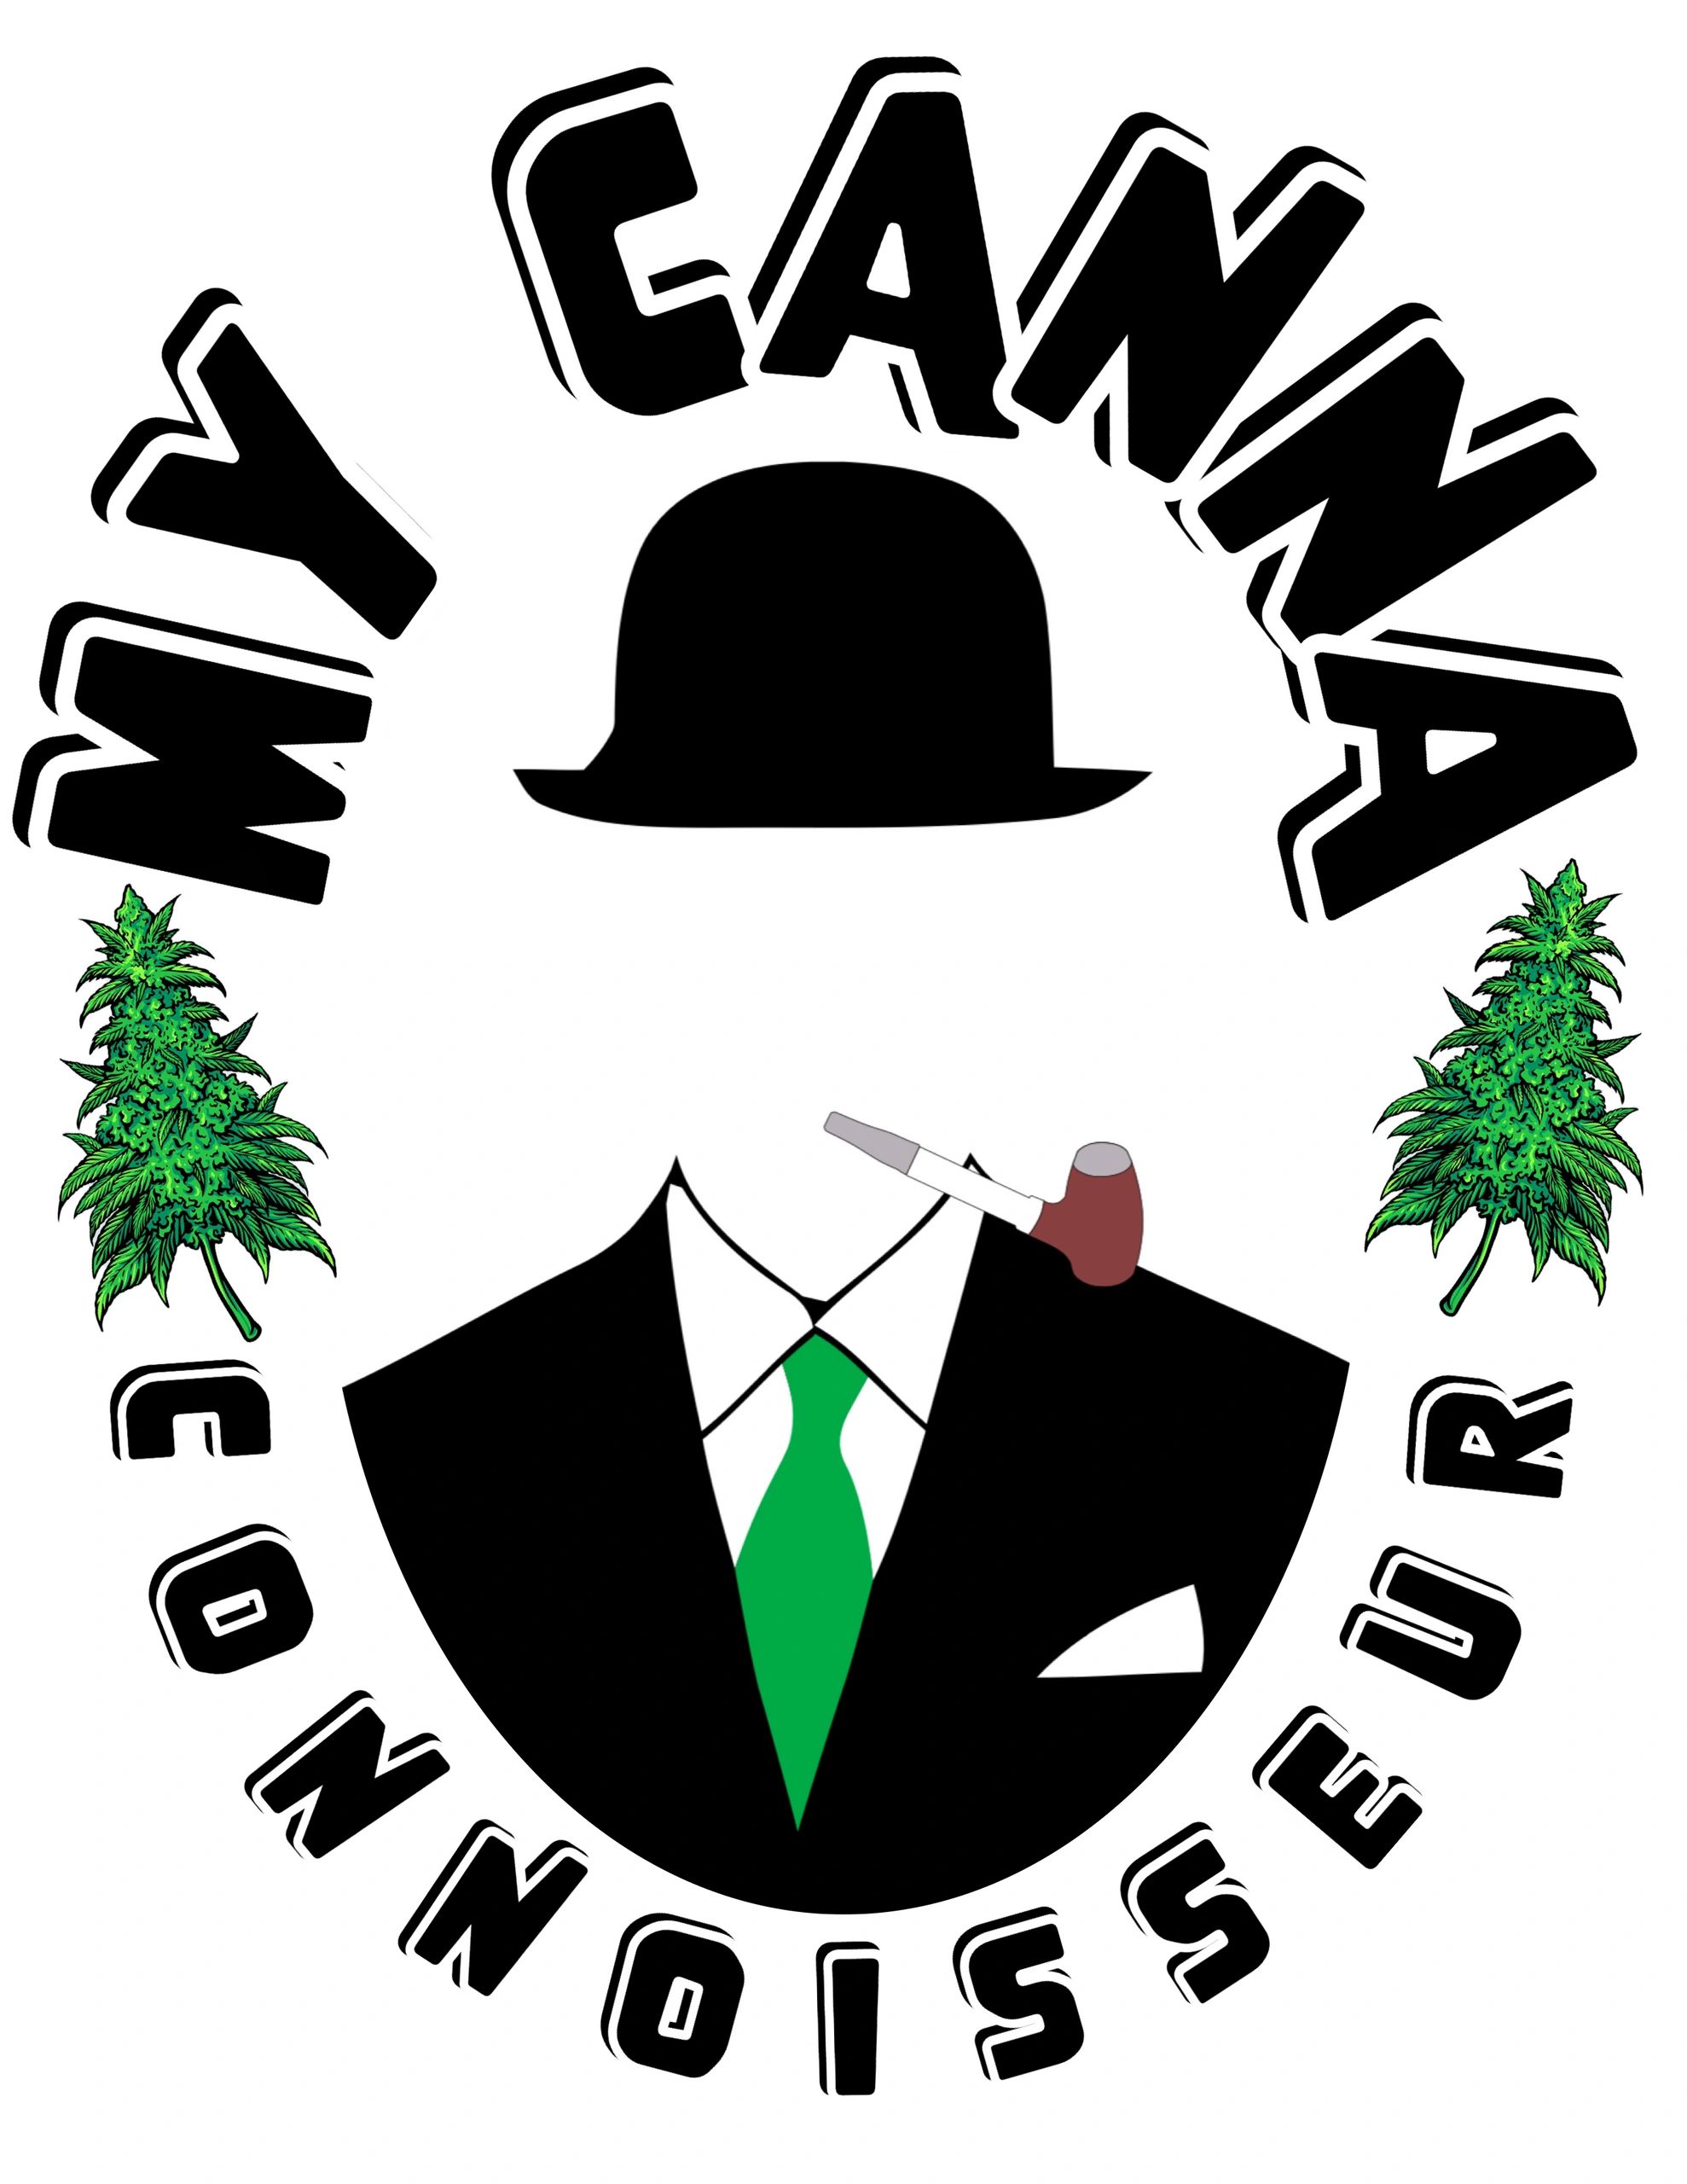 My Canna Connoisseur Logo